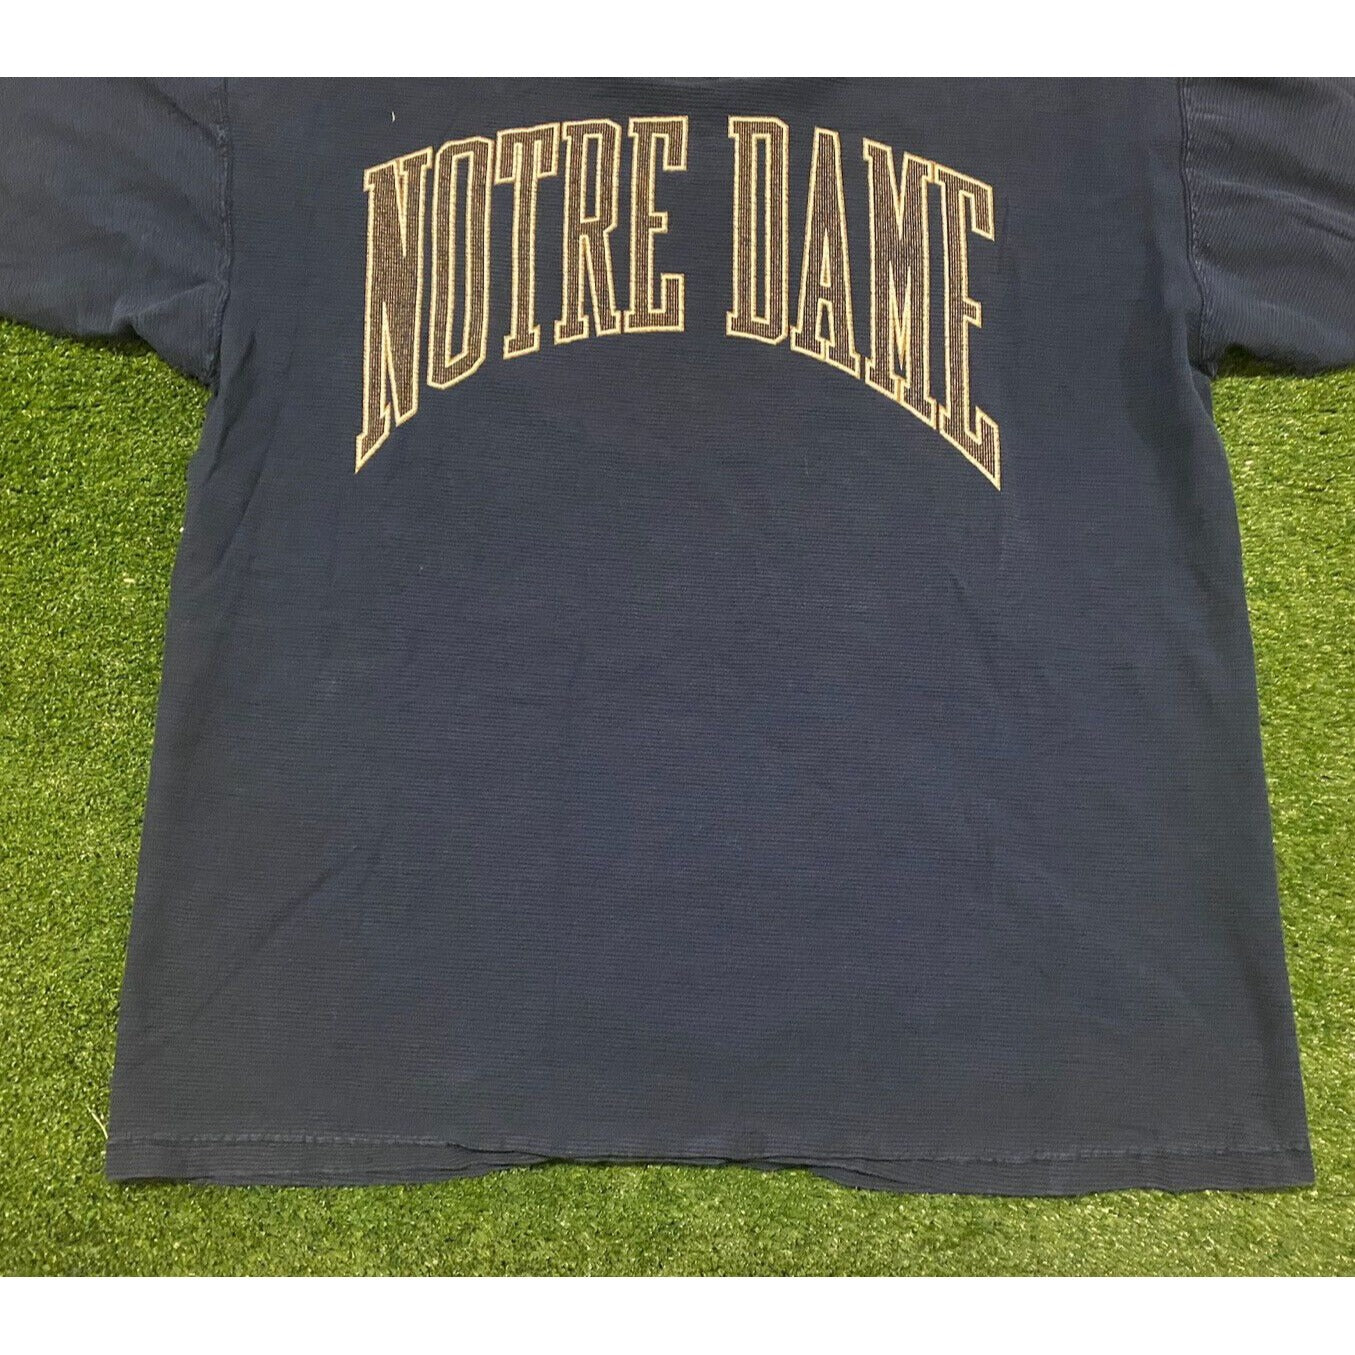 Vintage 1990s Galt Sand Notre Dame UND Fighting Irish arch t-shirt XL retro